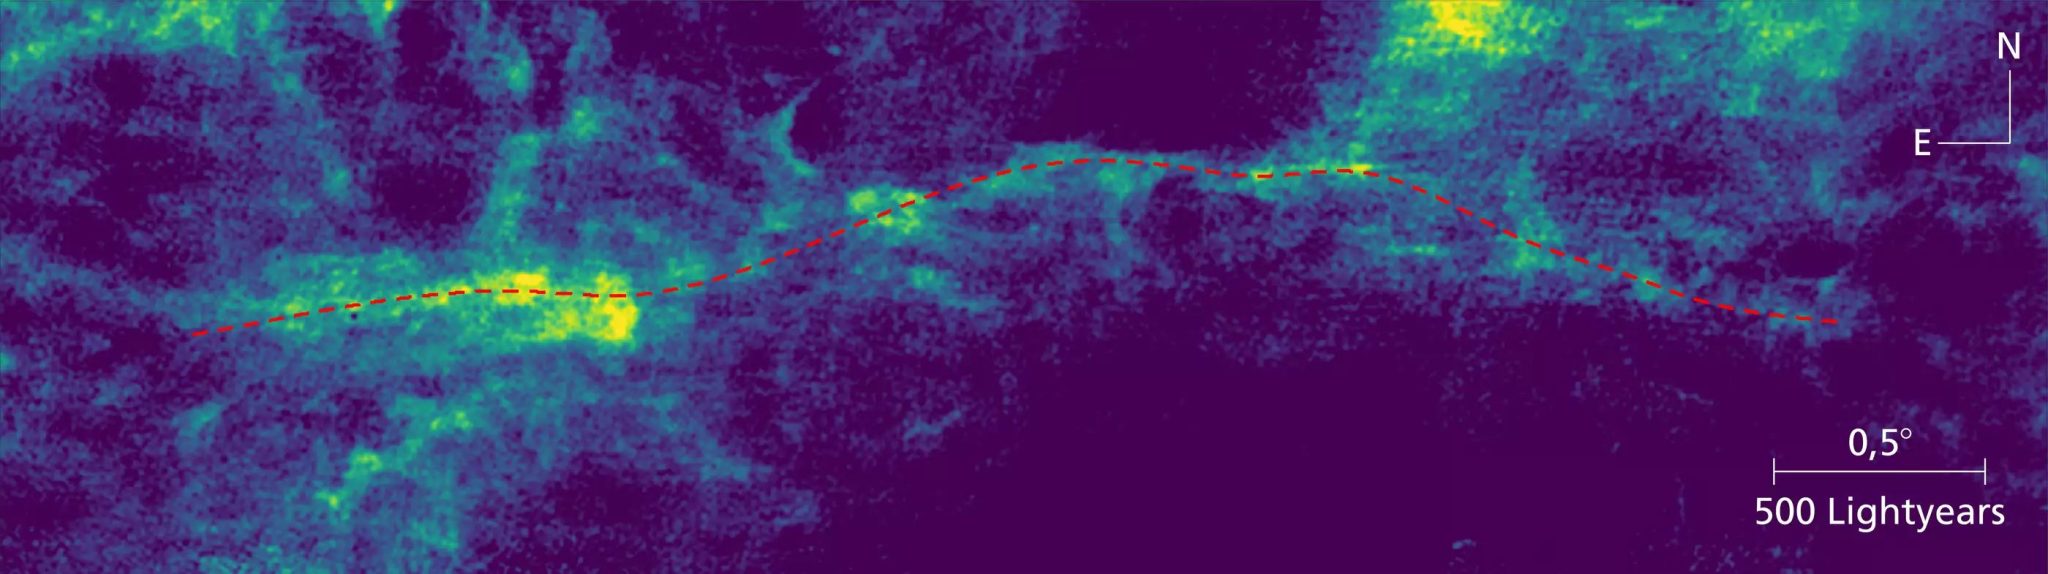 天文学家发现银河系中最大结构Maggie-第3张图片-IT新视野